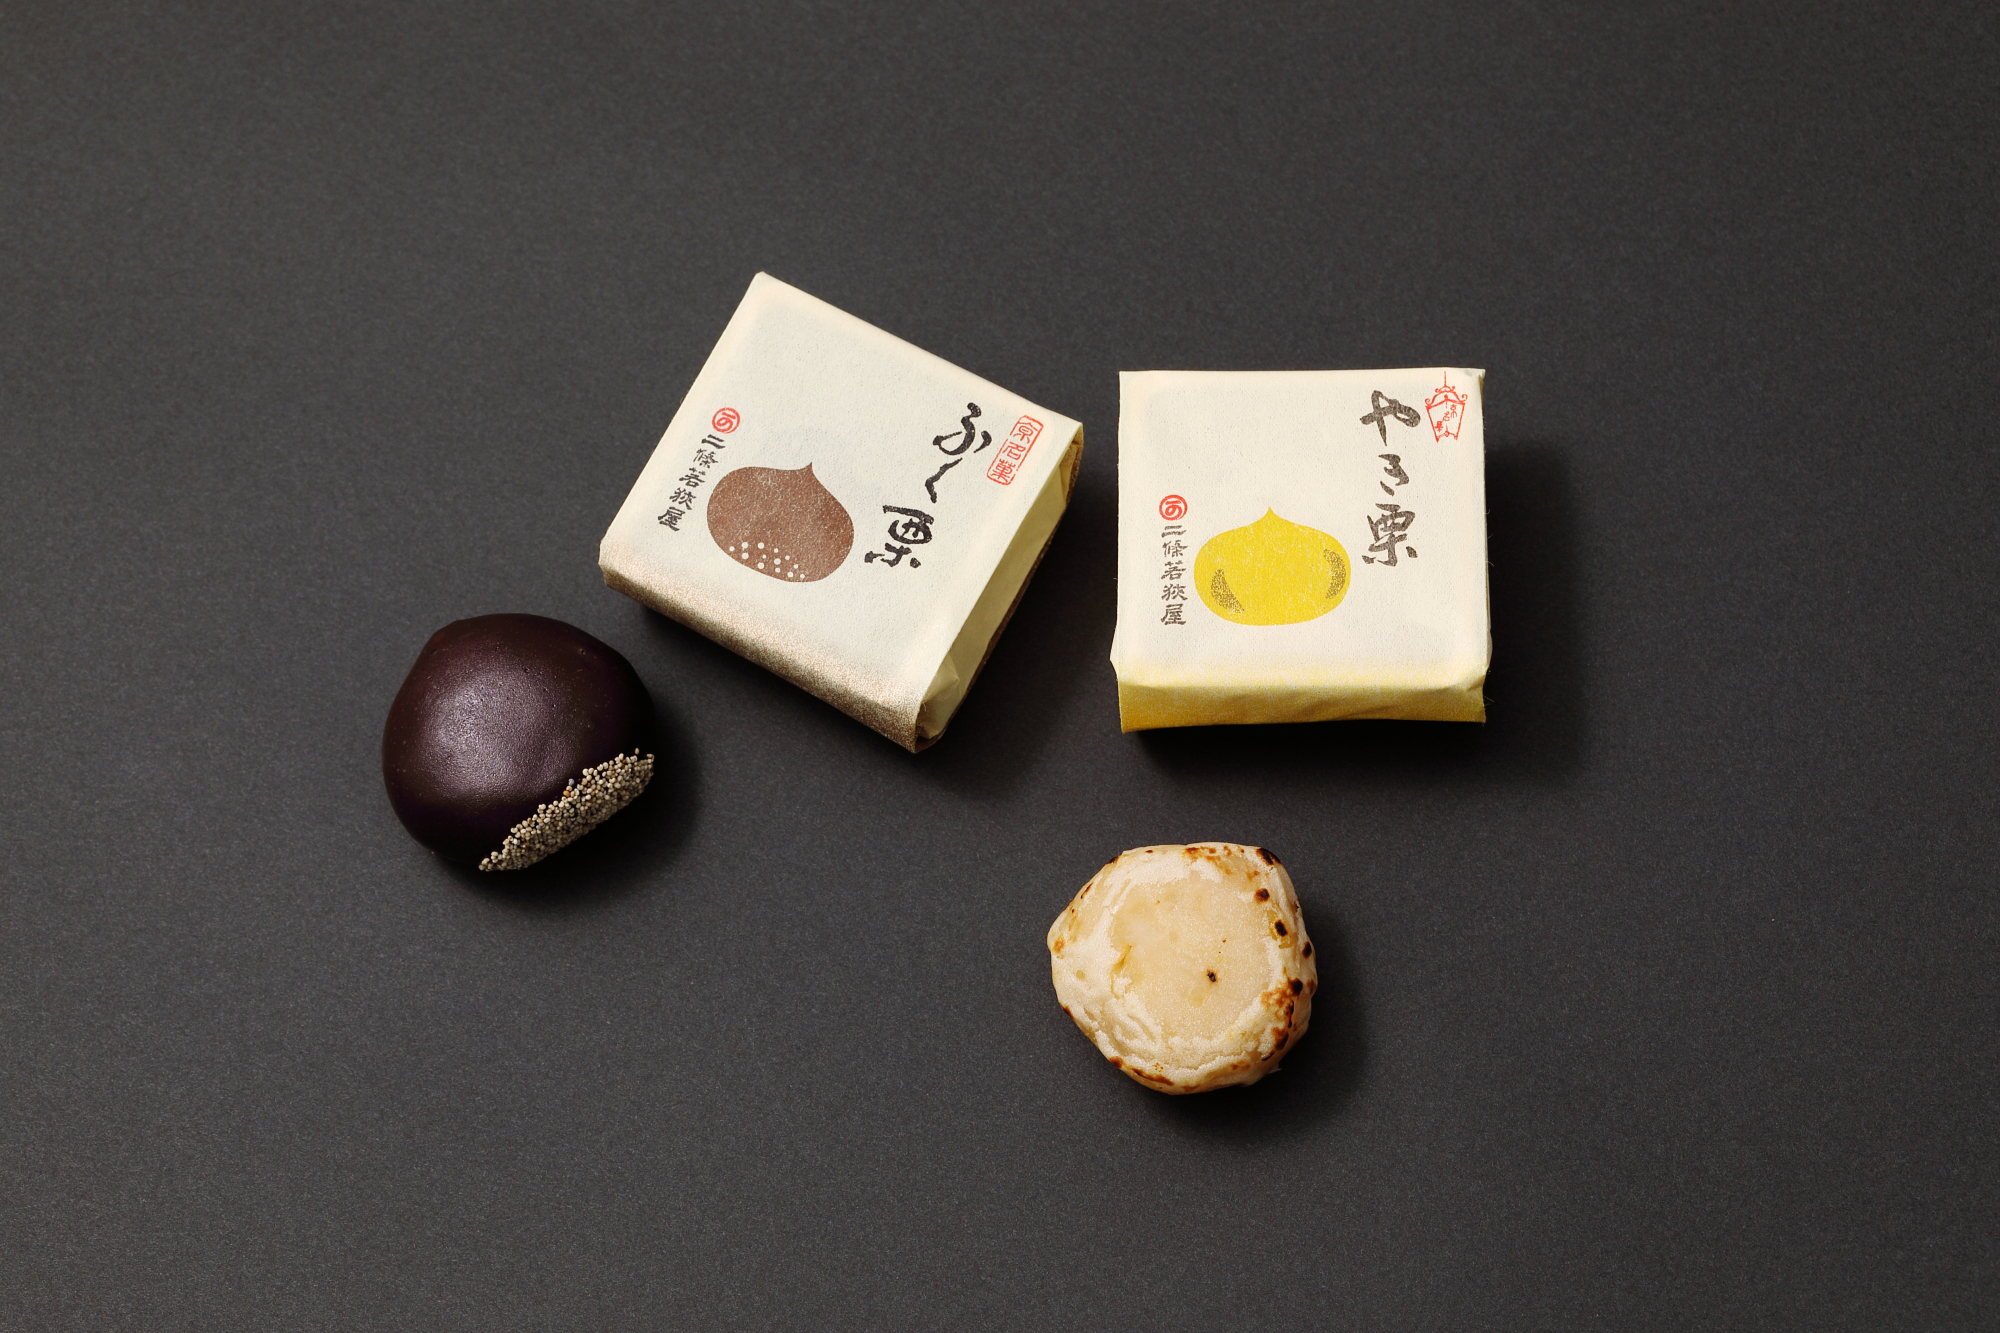 京都二條若狭屋の人気の栗菓子「ゴールドくり」和スイーツ好き必見